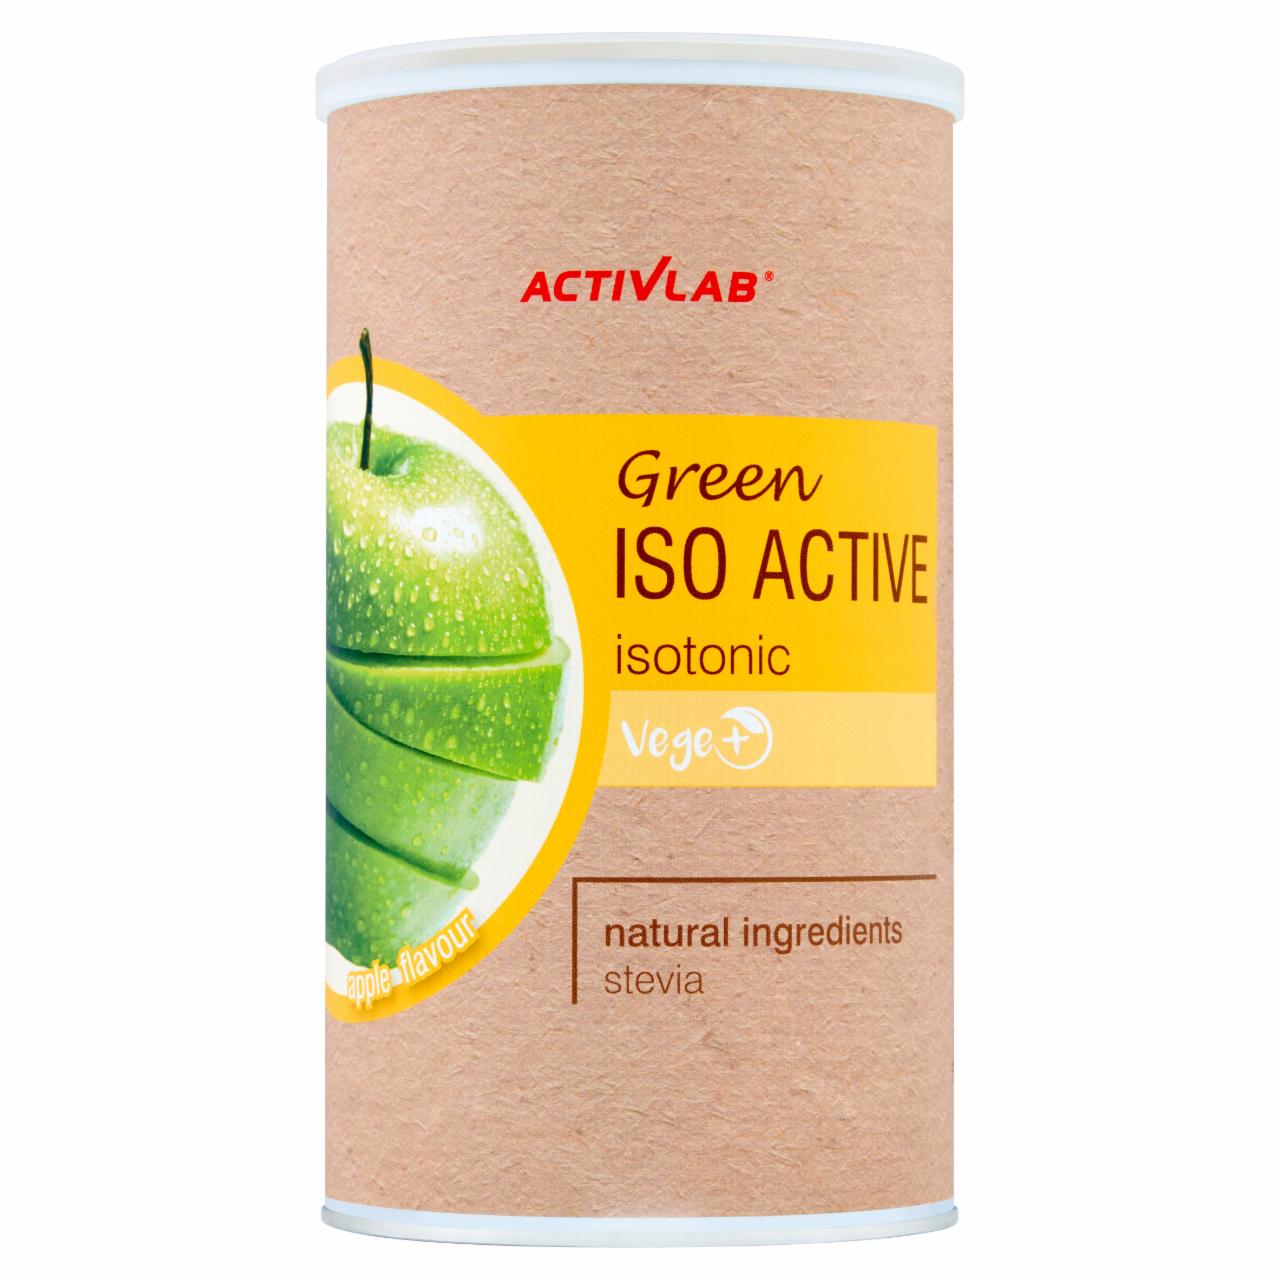 Zdjęcia - Activlab Green Isotonik Napój izotoniczny o smaku jabłkowym 475 g